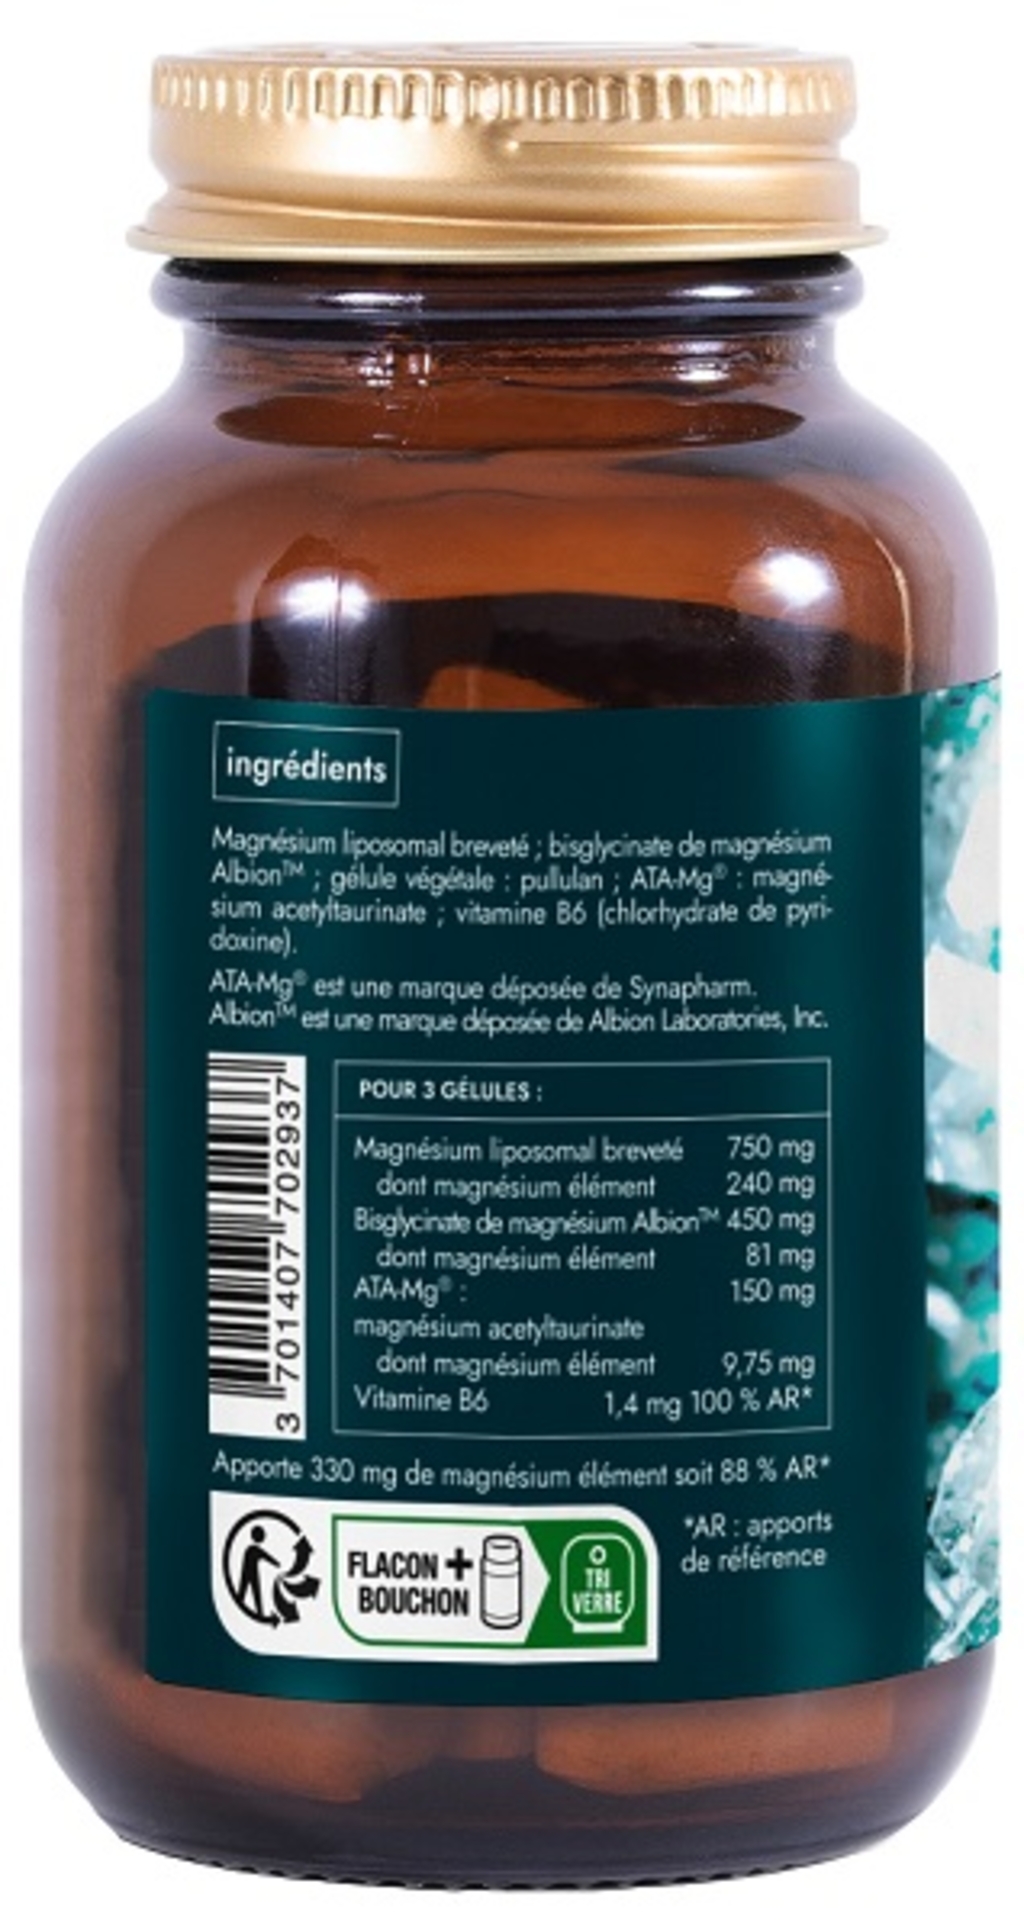 Magnésium liposomal premium